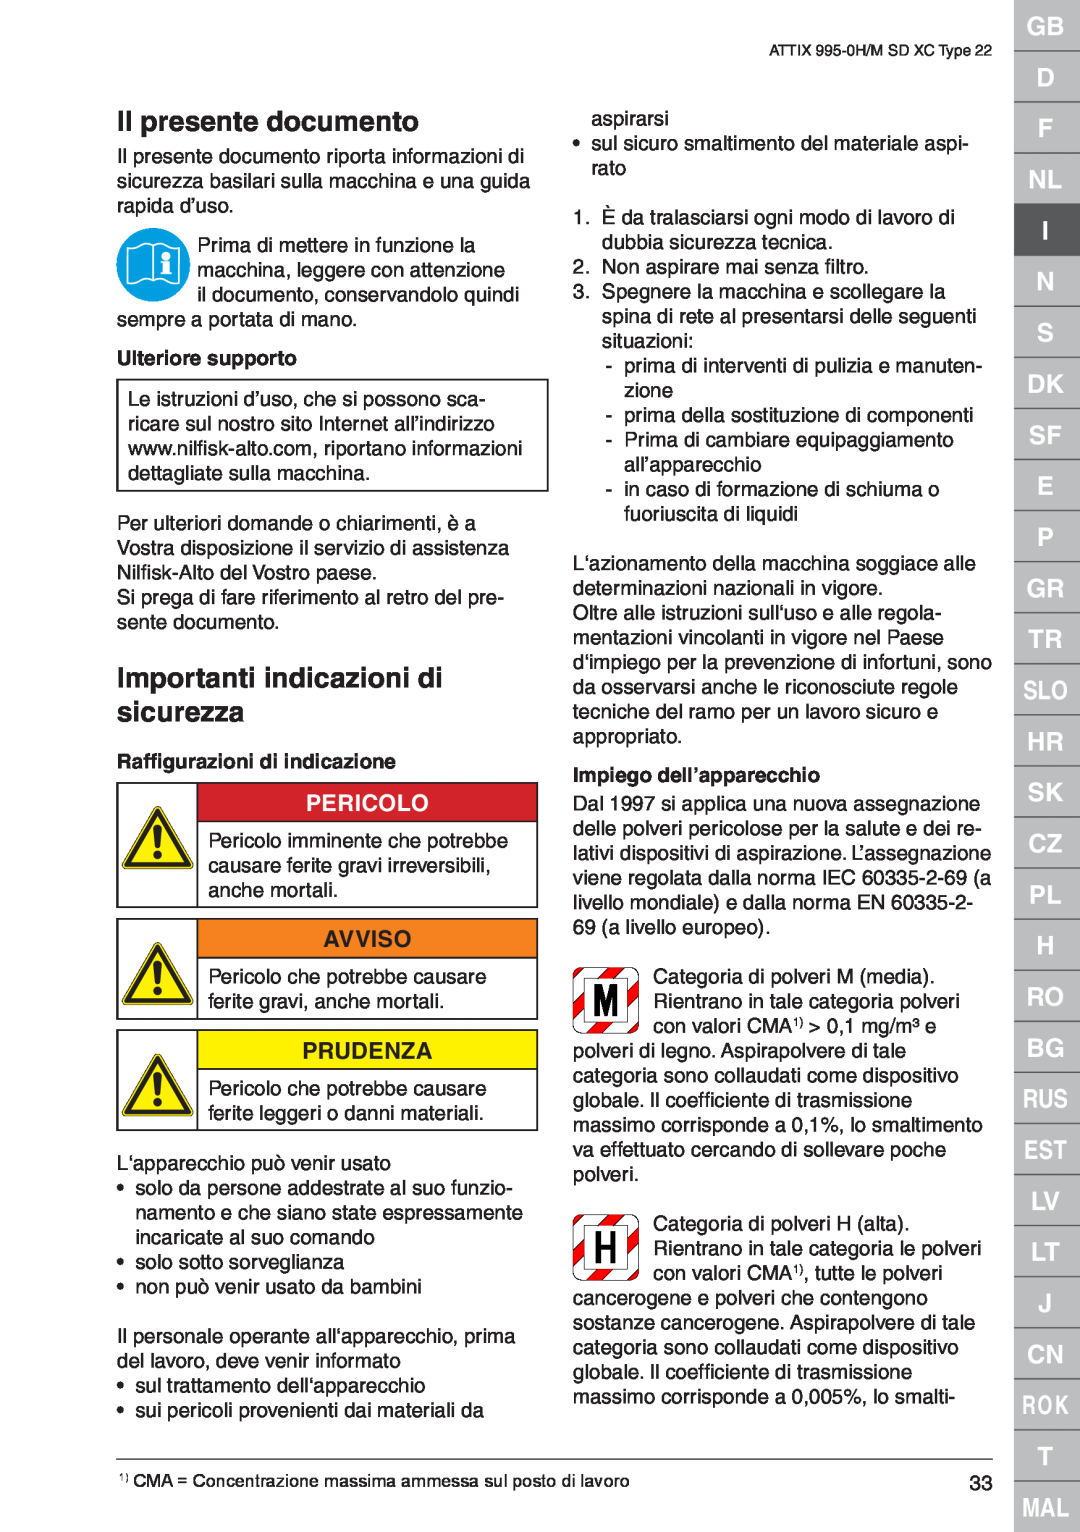 Nilfisk-ALTO M SD XC Type 22 Il presente documento, Importanti indicazioni di sicurezza, Pericolo, Avviso, Prudenza 